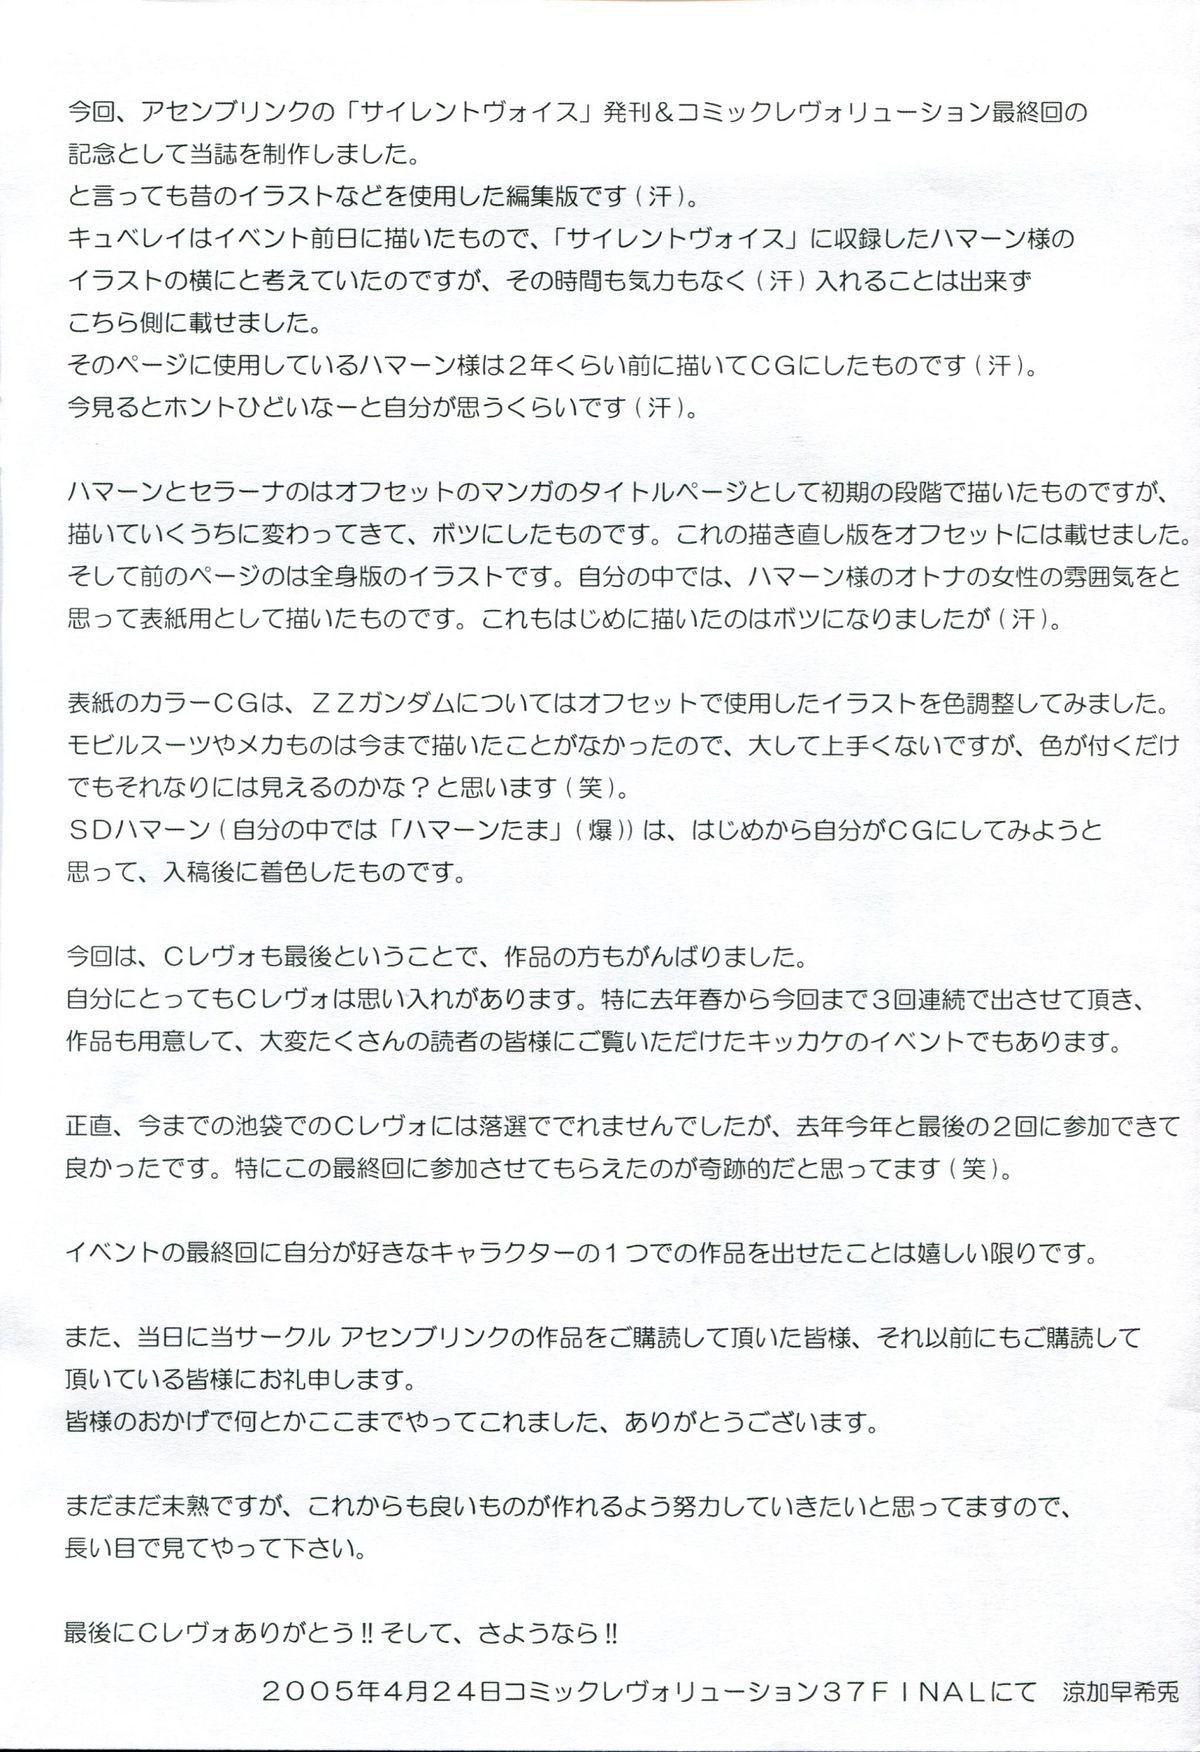 Rico Tokubetsu Kinenbon - Gundam zz Interracial Sex - Page 5